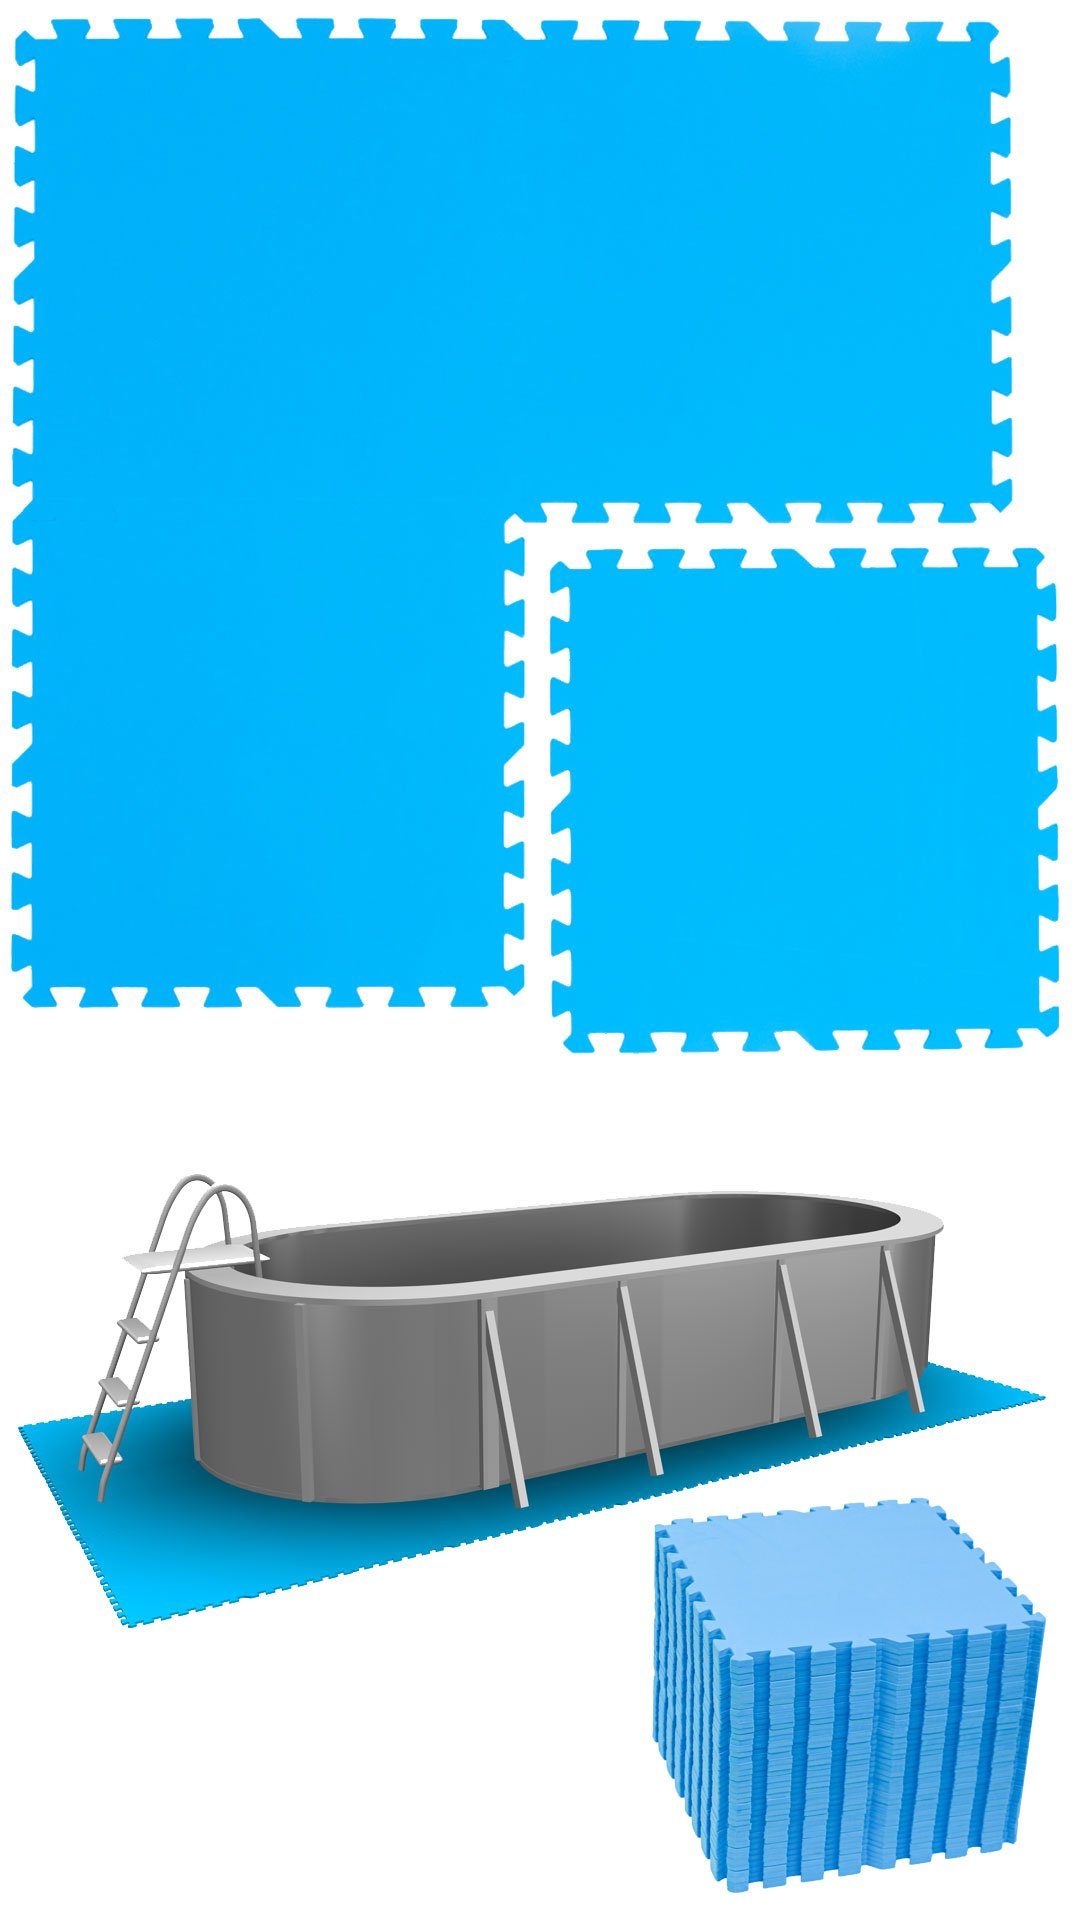 eyepower Bodenmatte 9,5 m² Poolunterlage 40 EVA Matten 50x50 Pool Set, erweiterbares Stecksystem Blau